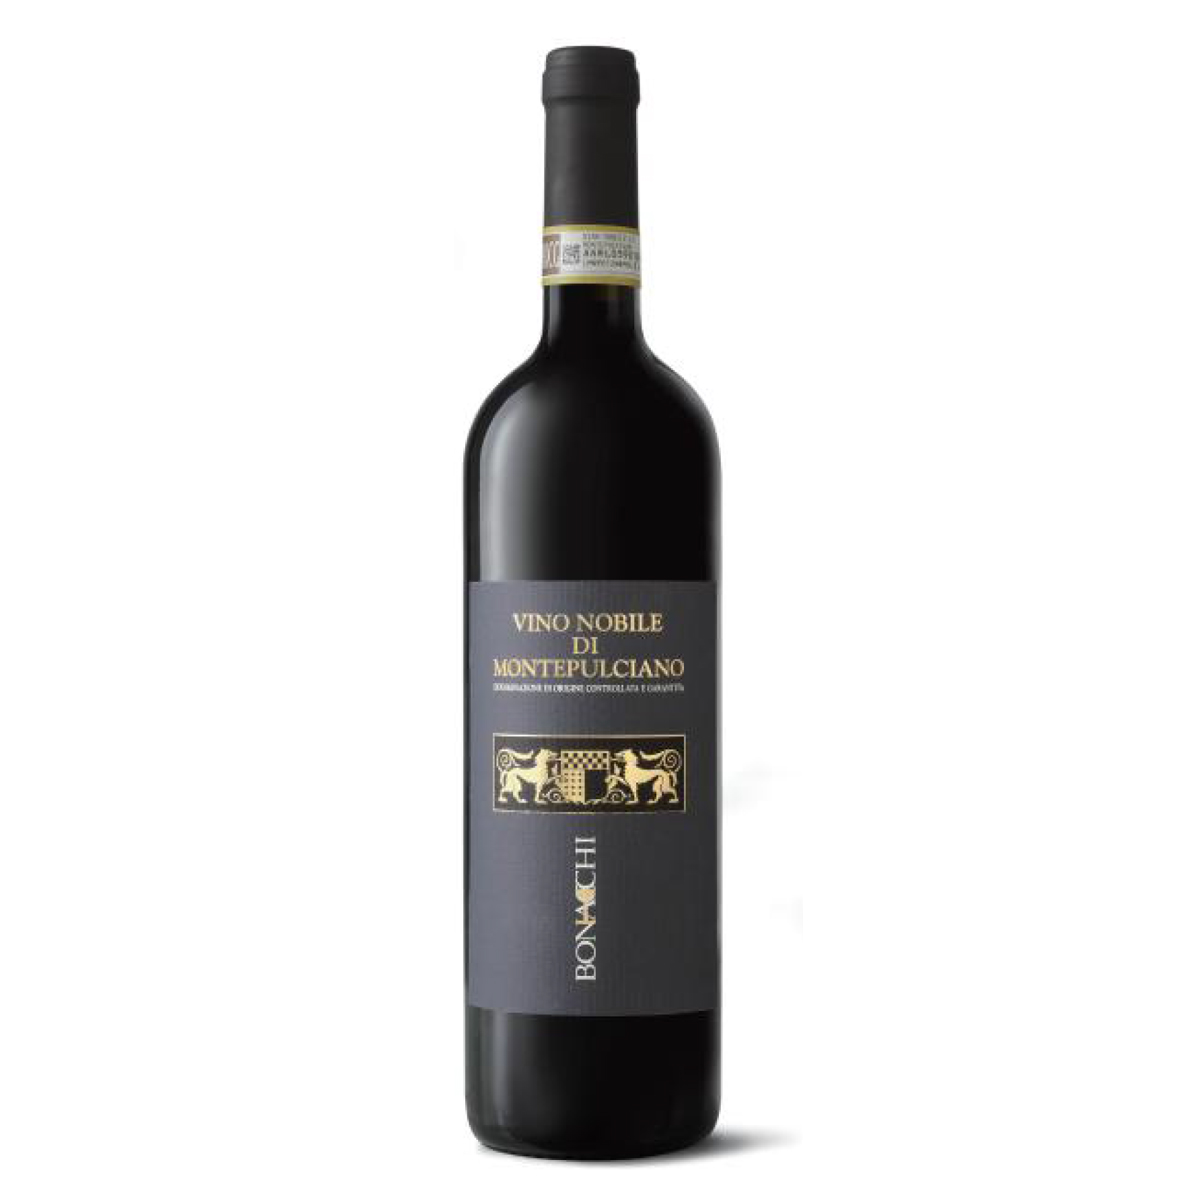 意大利蒙特普恰诺·诺比莱干红葡萄酒红酒